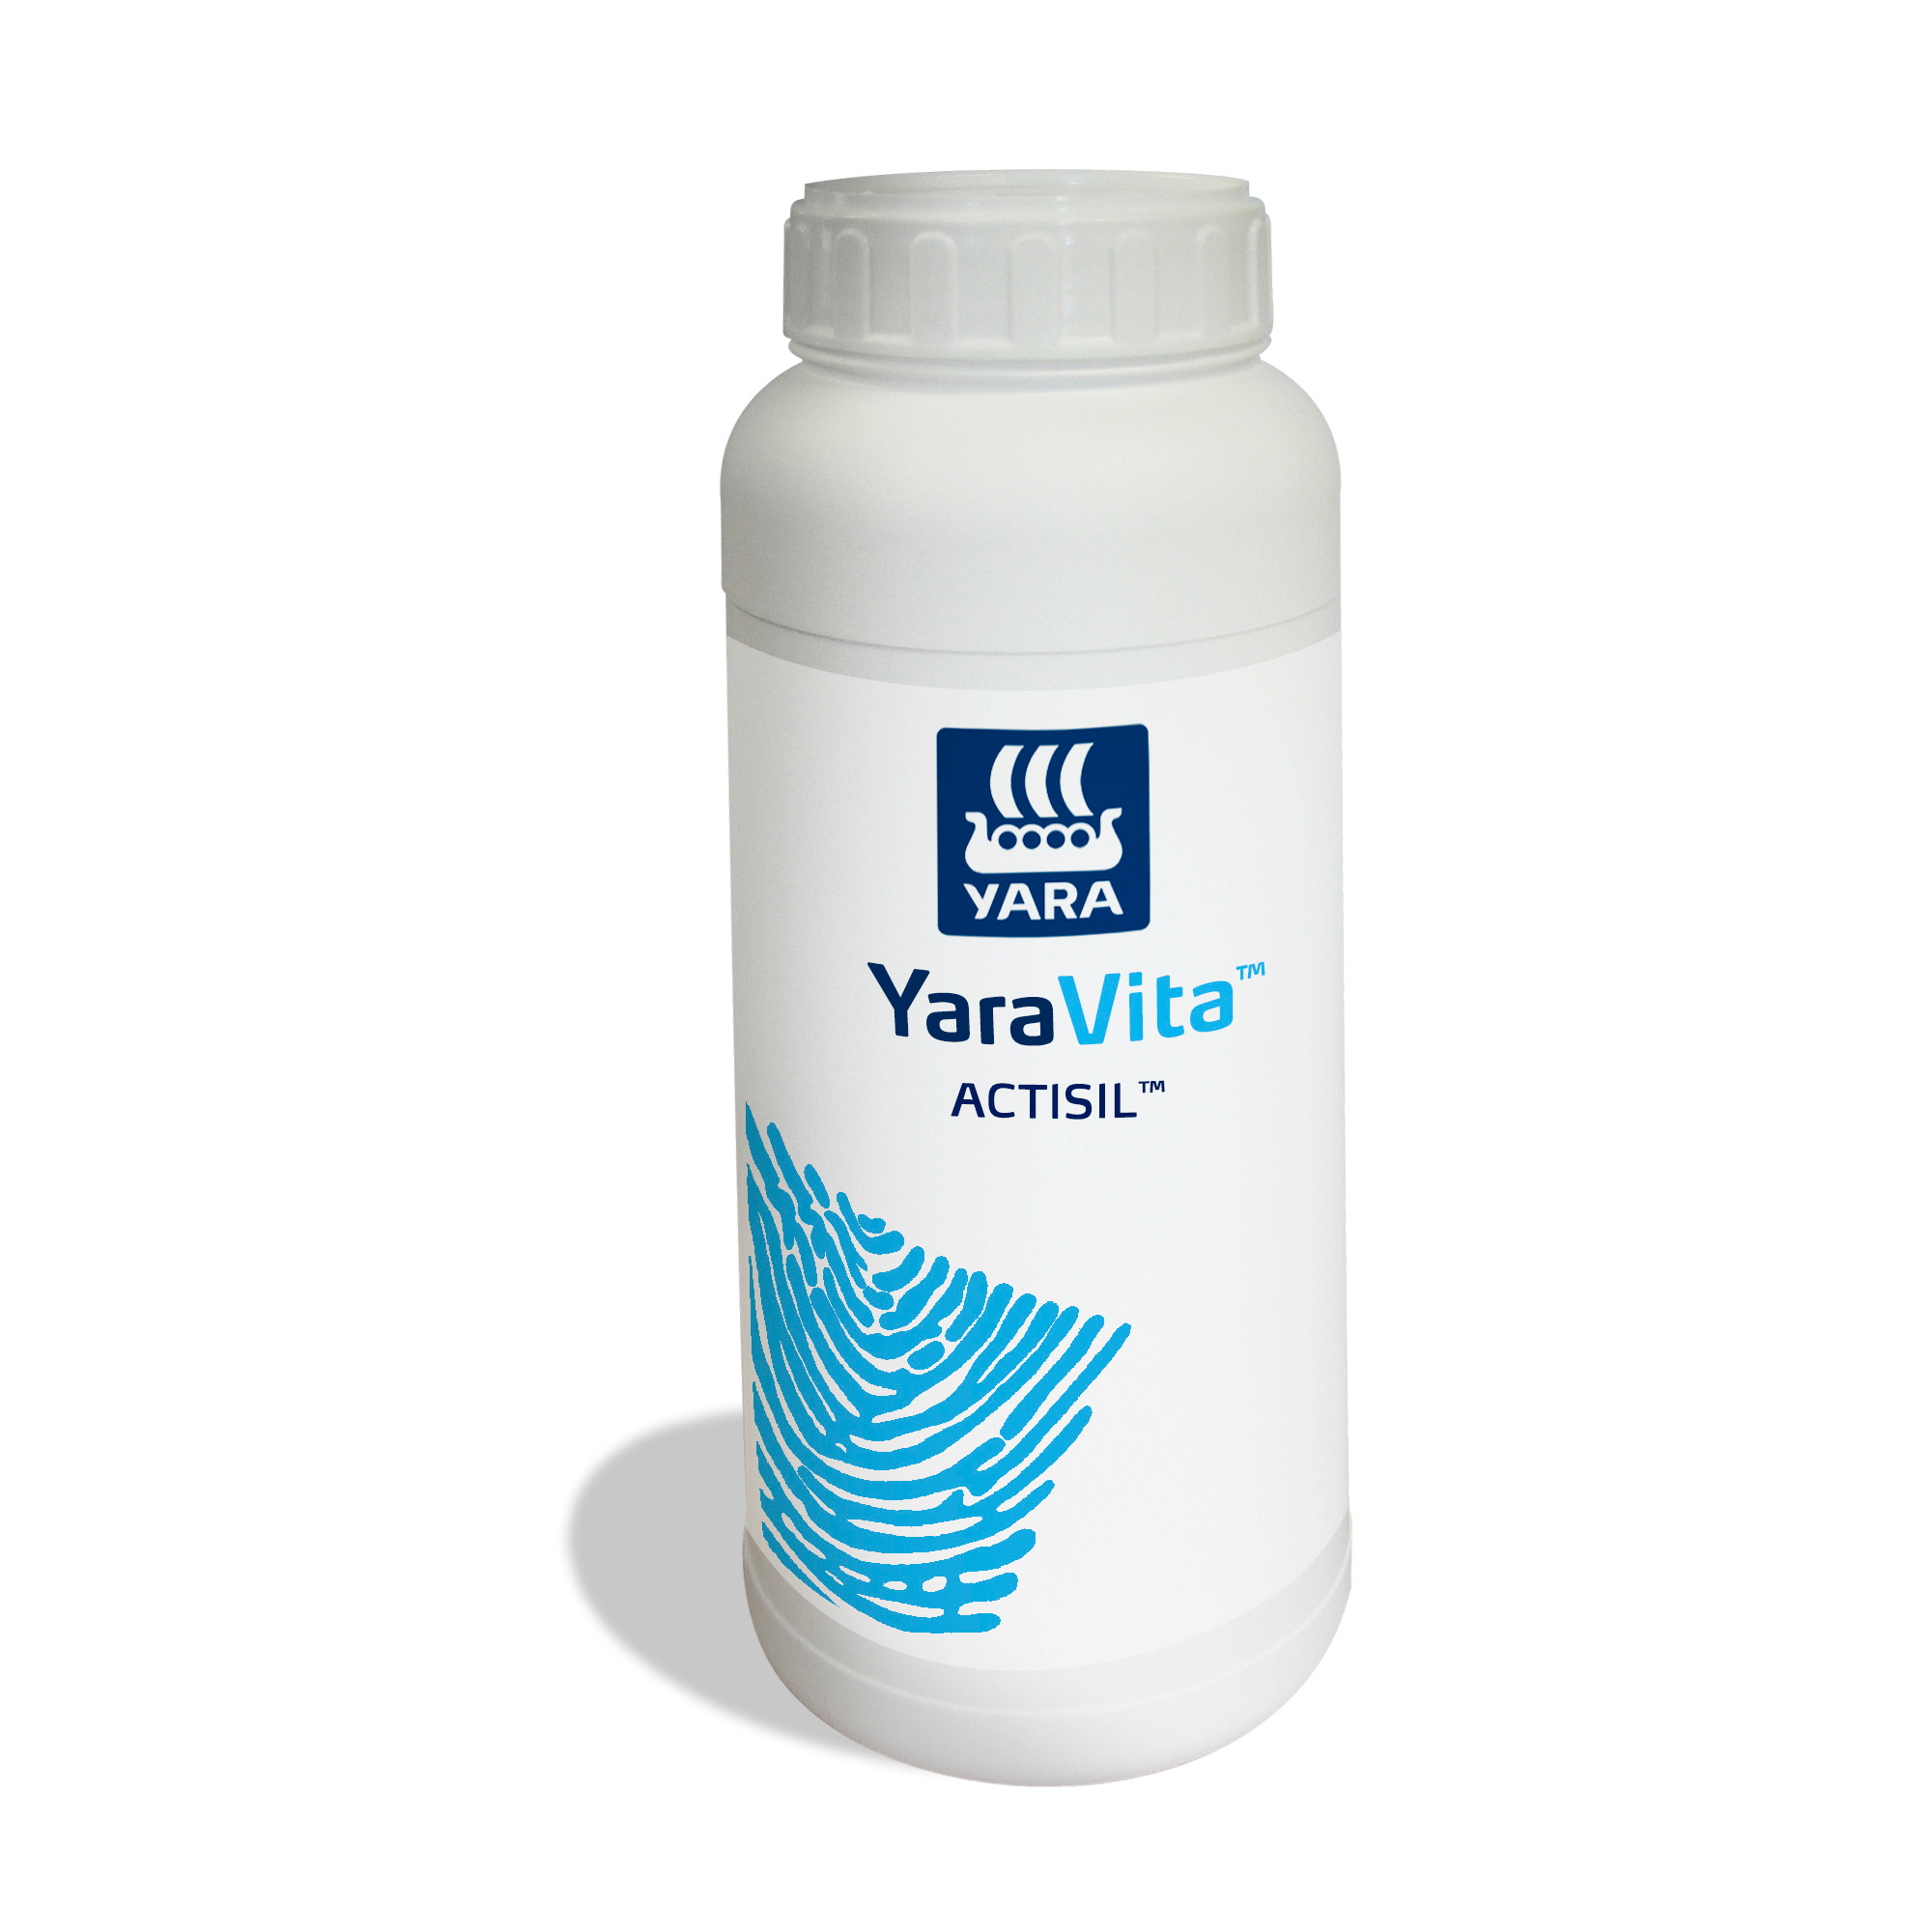 YaraVita® Actisil, 1 liter